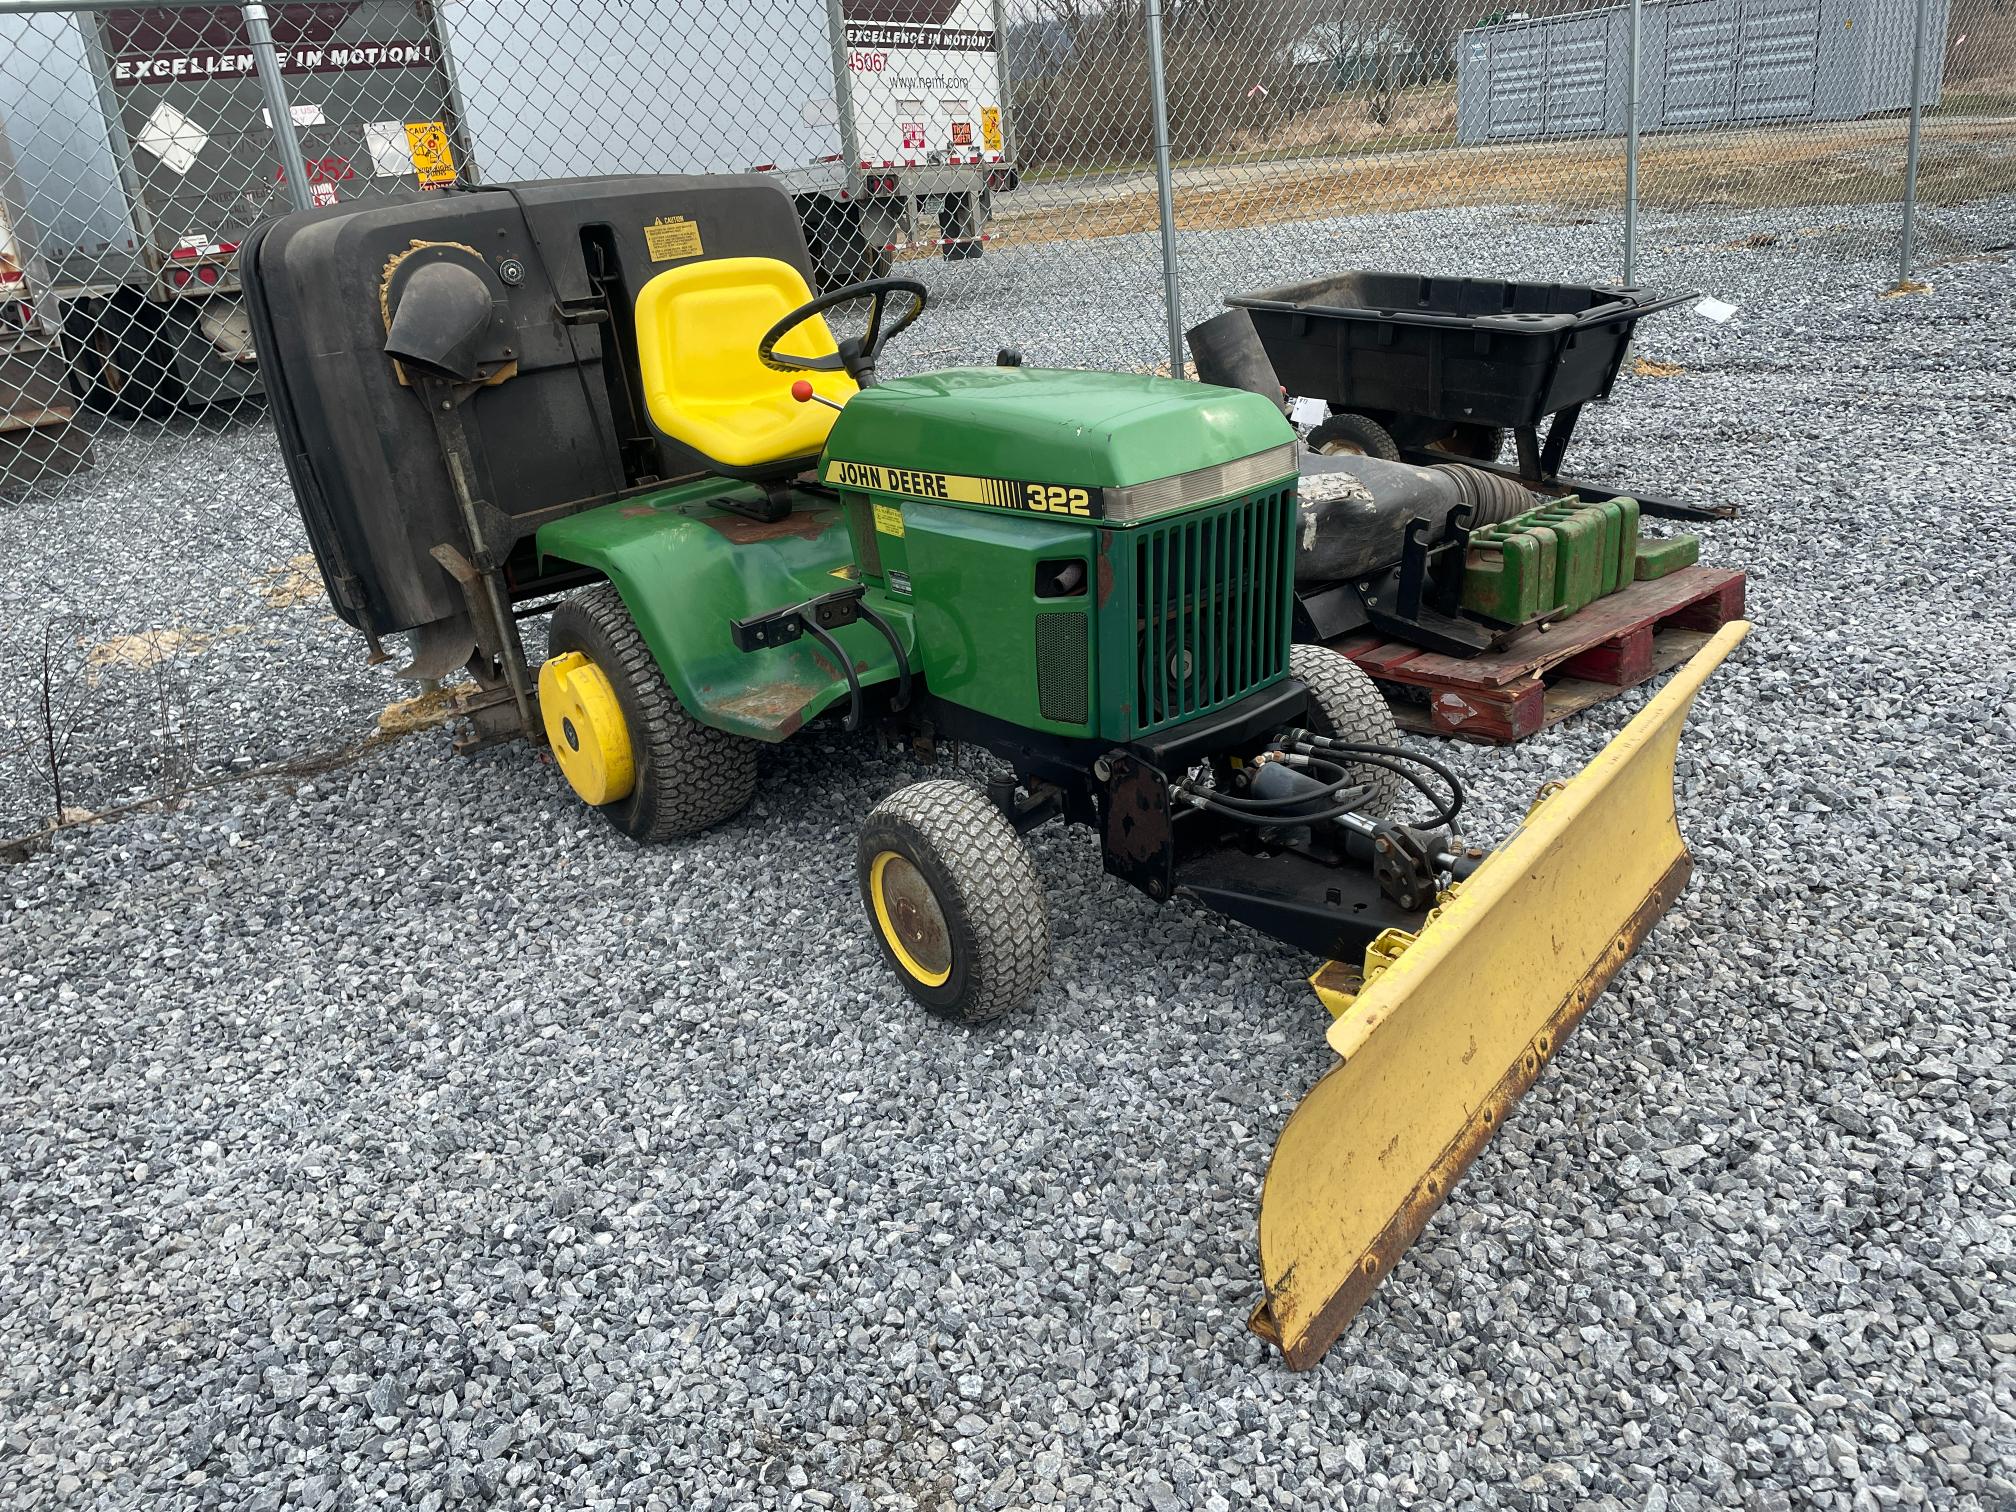 John Deere 322 Hydrostatic Lawn Tractor